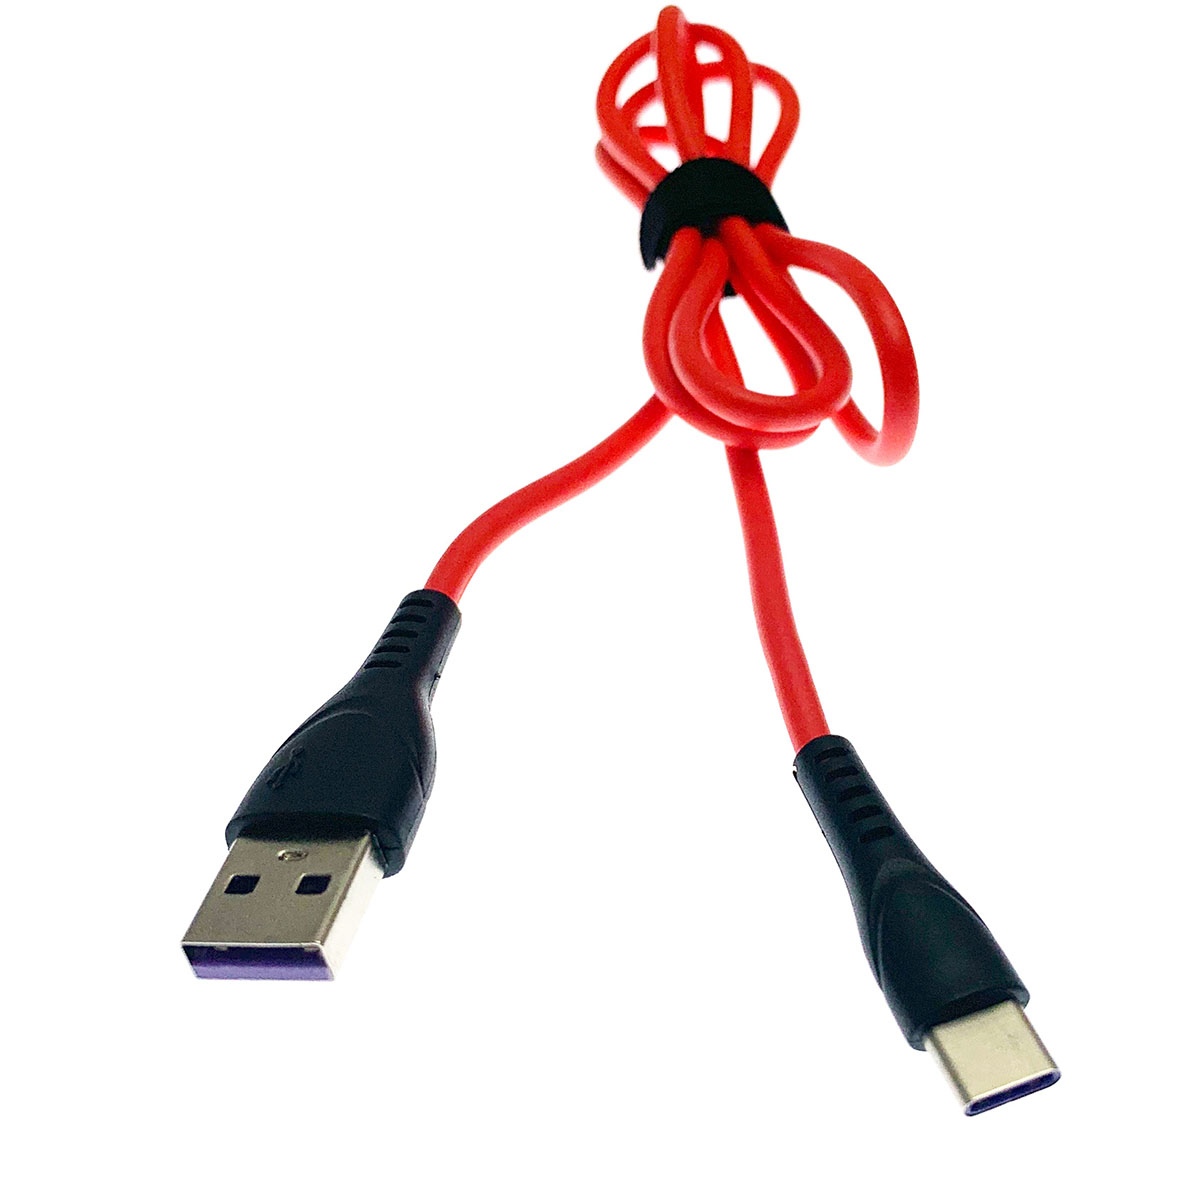 USB Дата-кабель "R18" Type-C USB 3.0 силиконовый эластичный, морозоустойчивый, длина 1 метр, красного цвета, фиолетовые контакты.